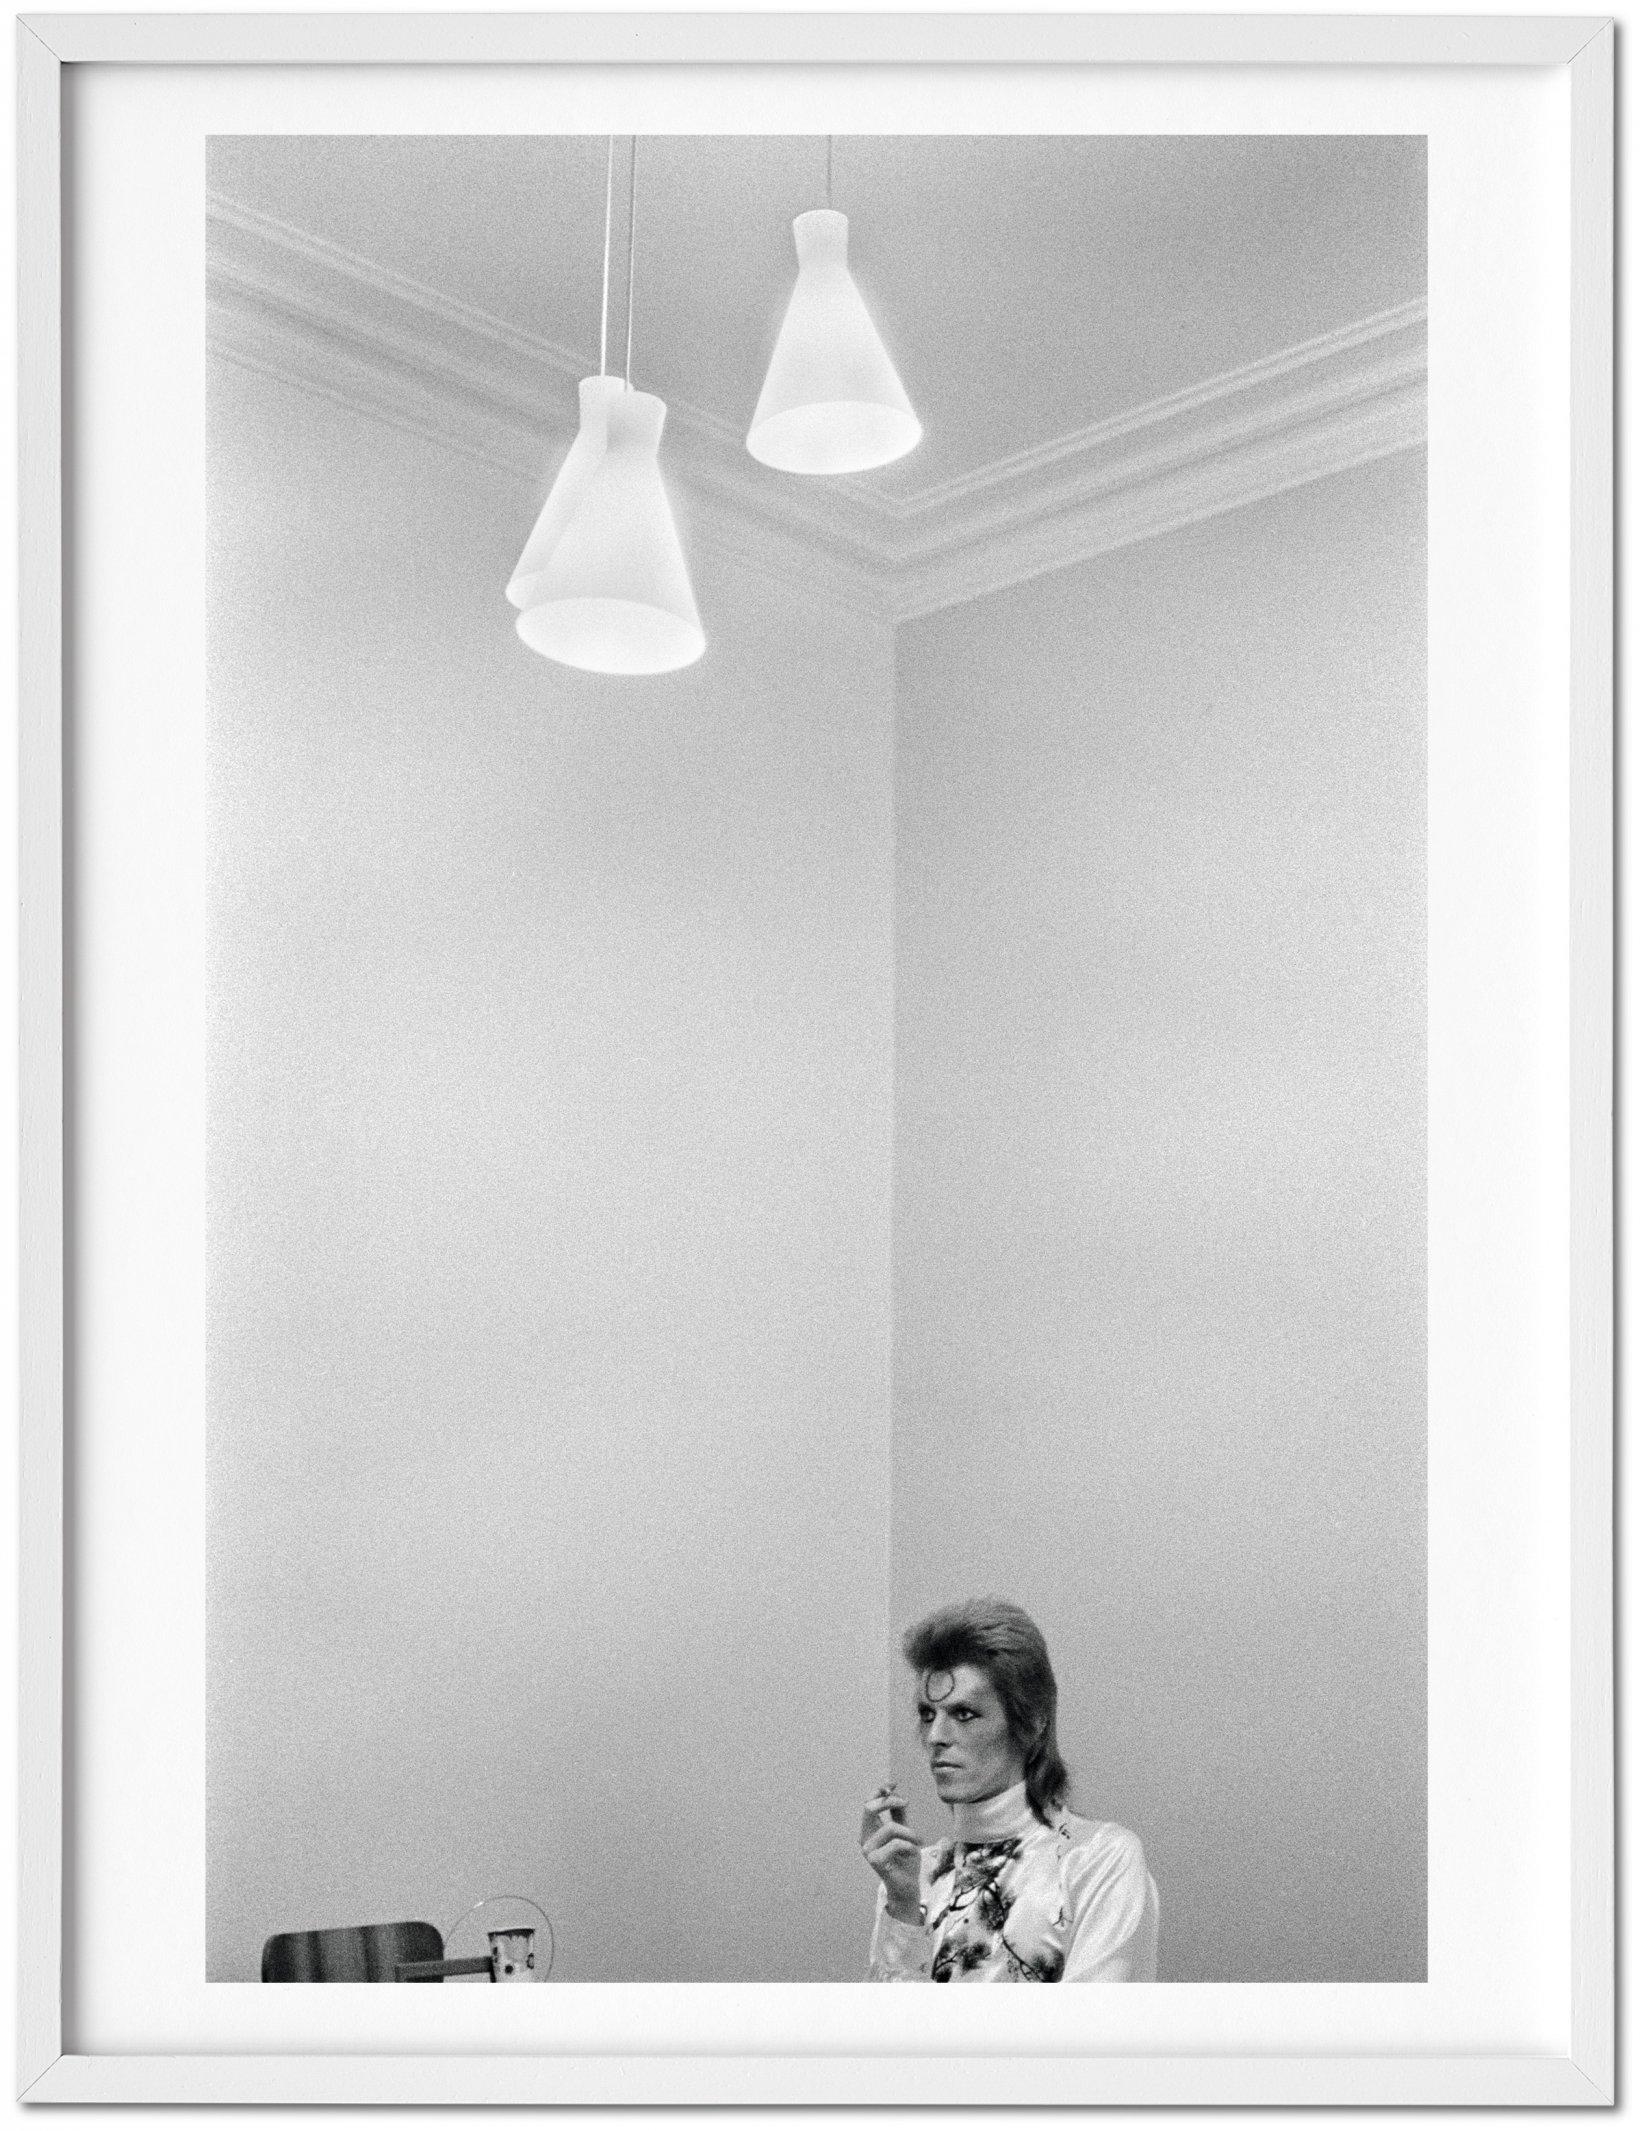 Black and White Photograph Mick Rock - David Bowie - Édition d'art limitée TASCHEN avec impression pigmentaire signée à la main - Nouveau